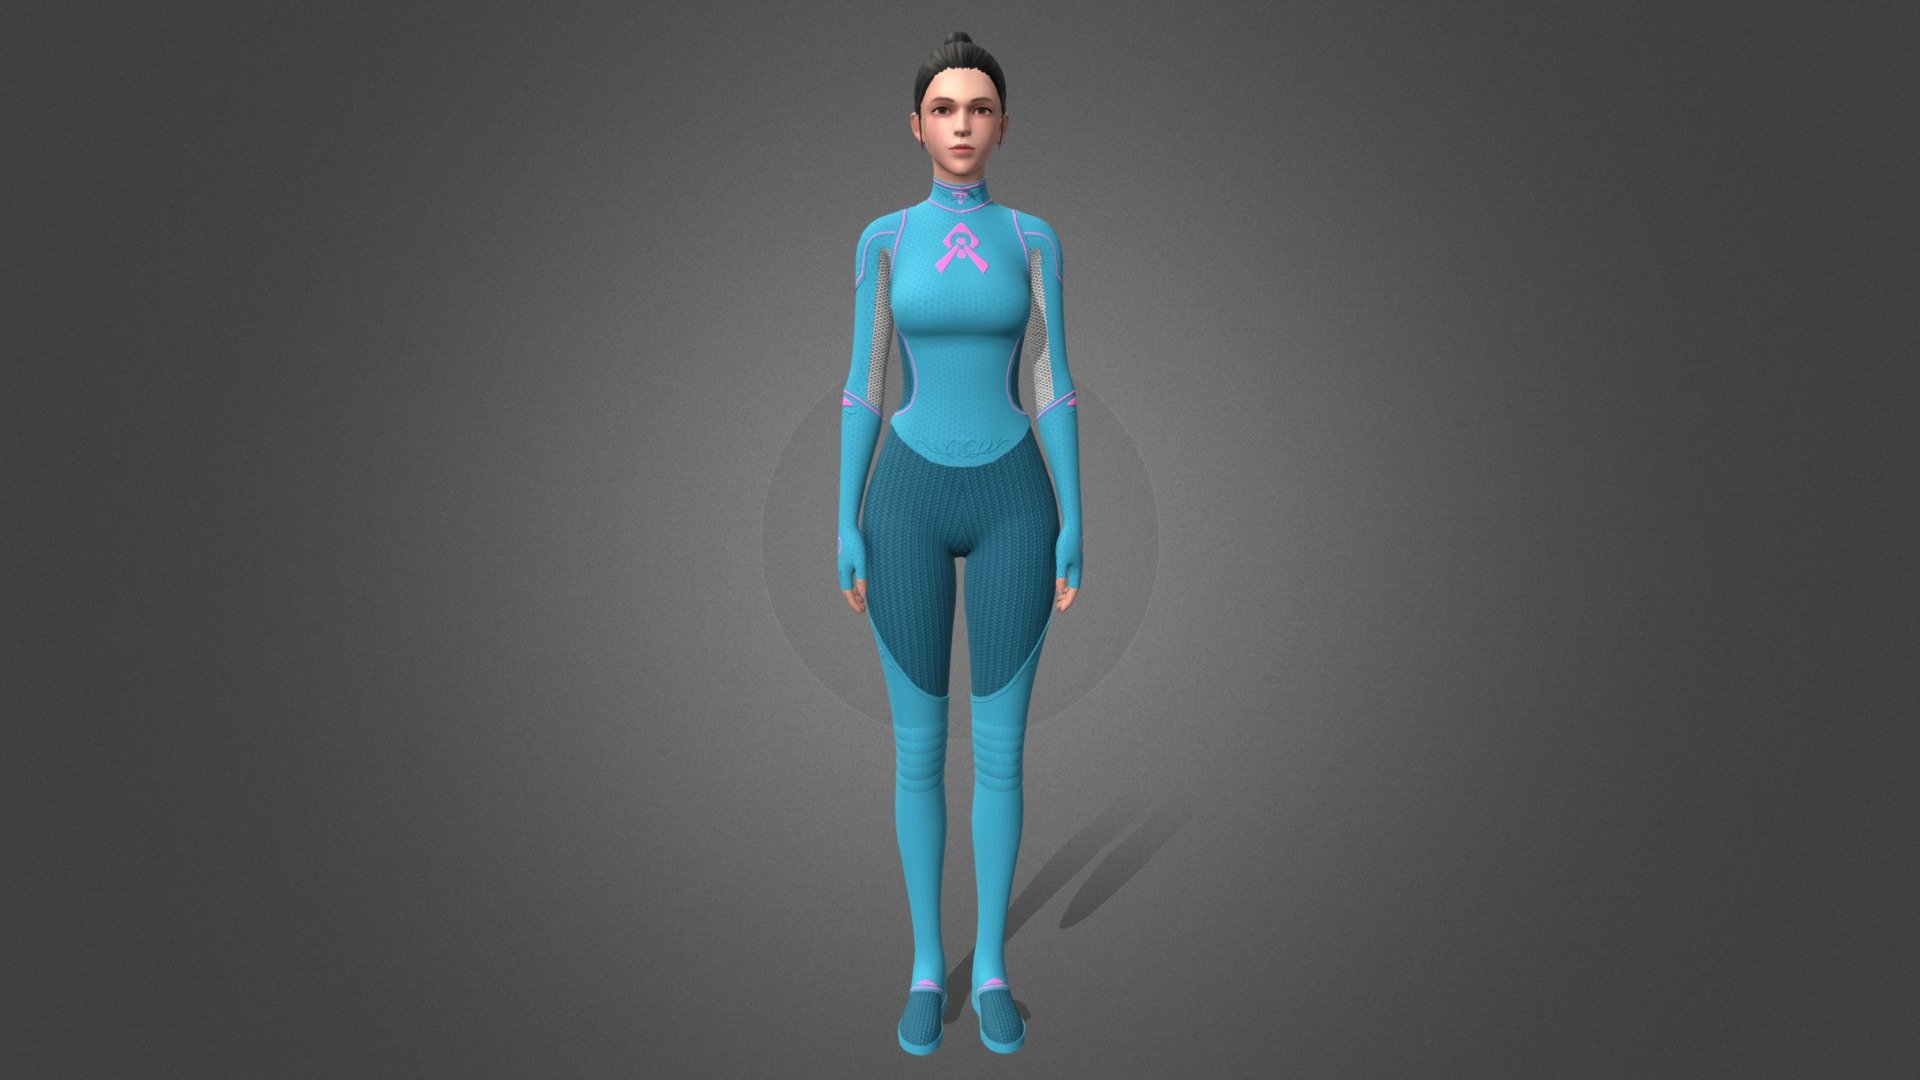 Female superhero suit1 - Female superhero suit - 3D model by xqs100 3d model